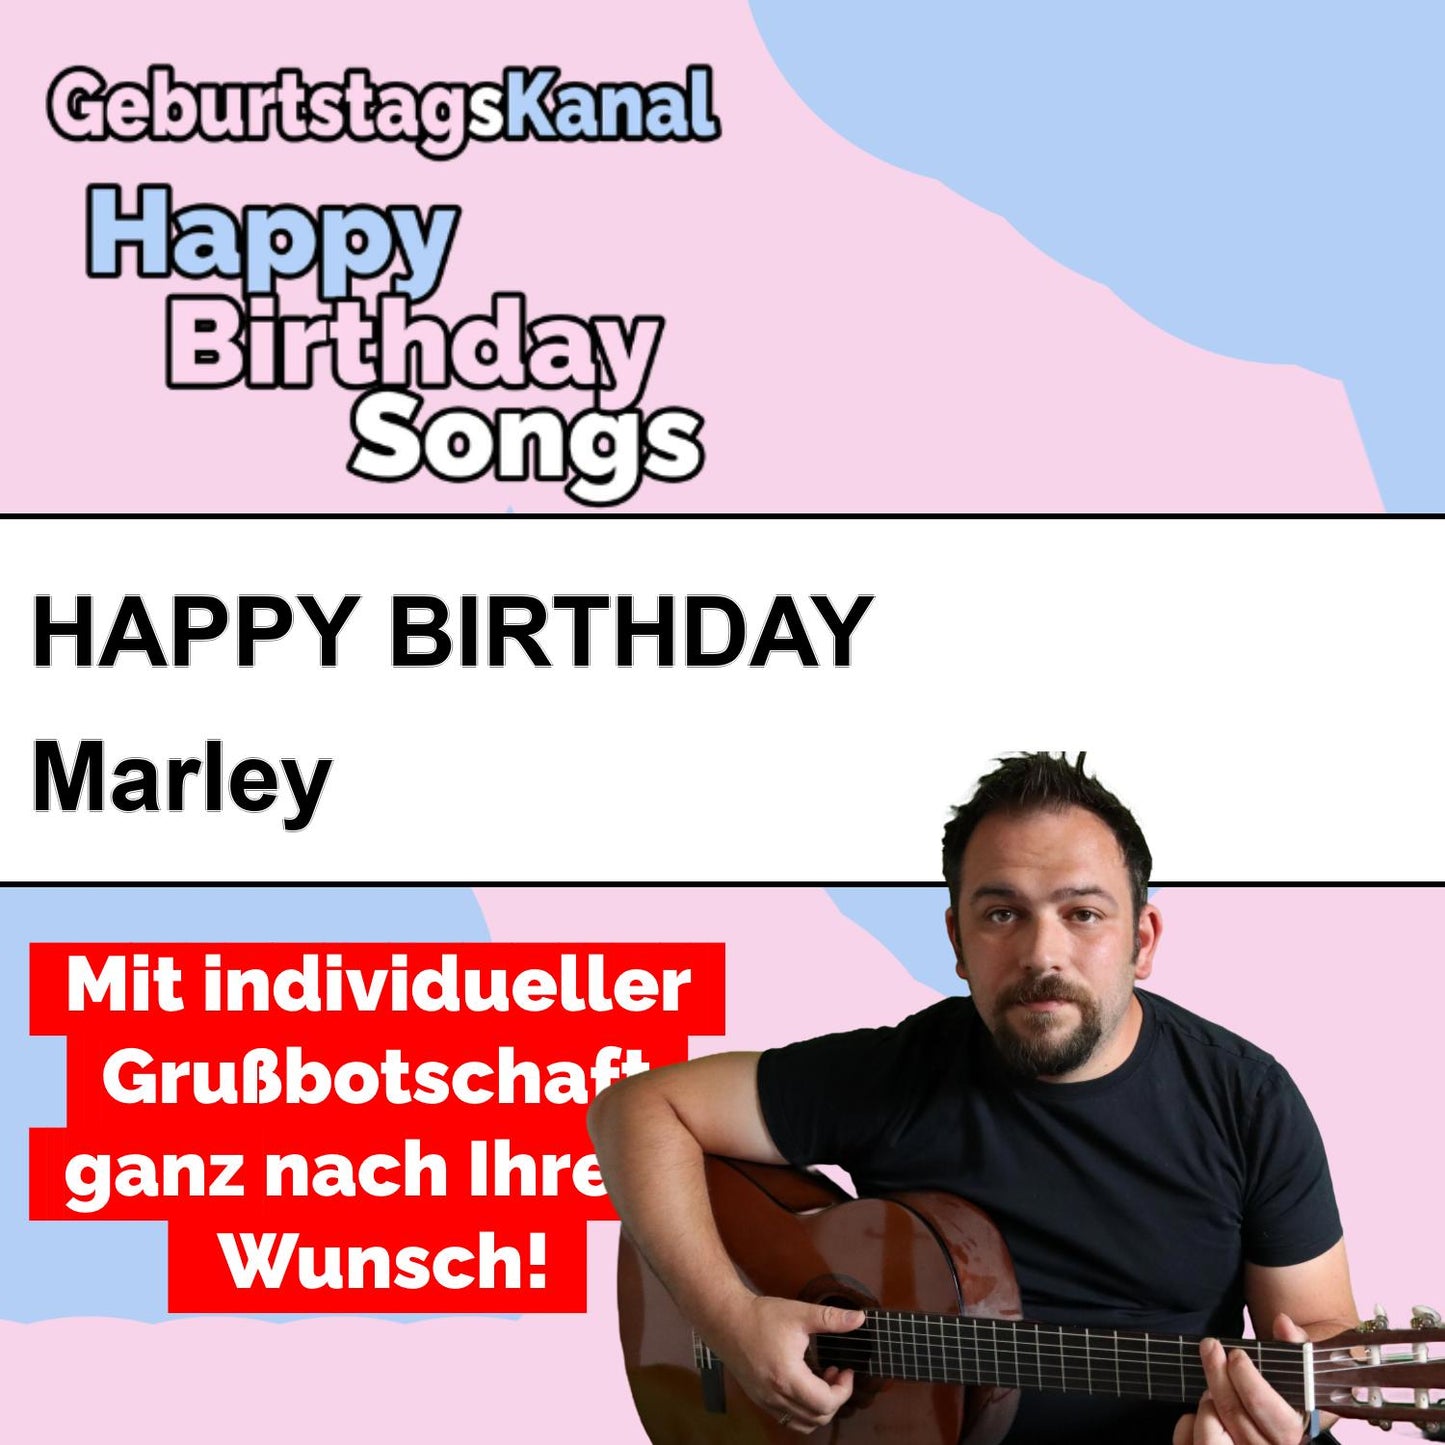 Produktbild Happy Birthday to you Marley mit Wunschgrußbotschaft